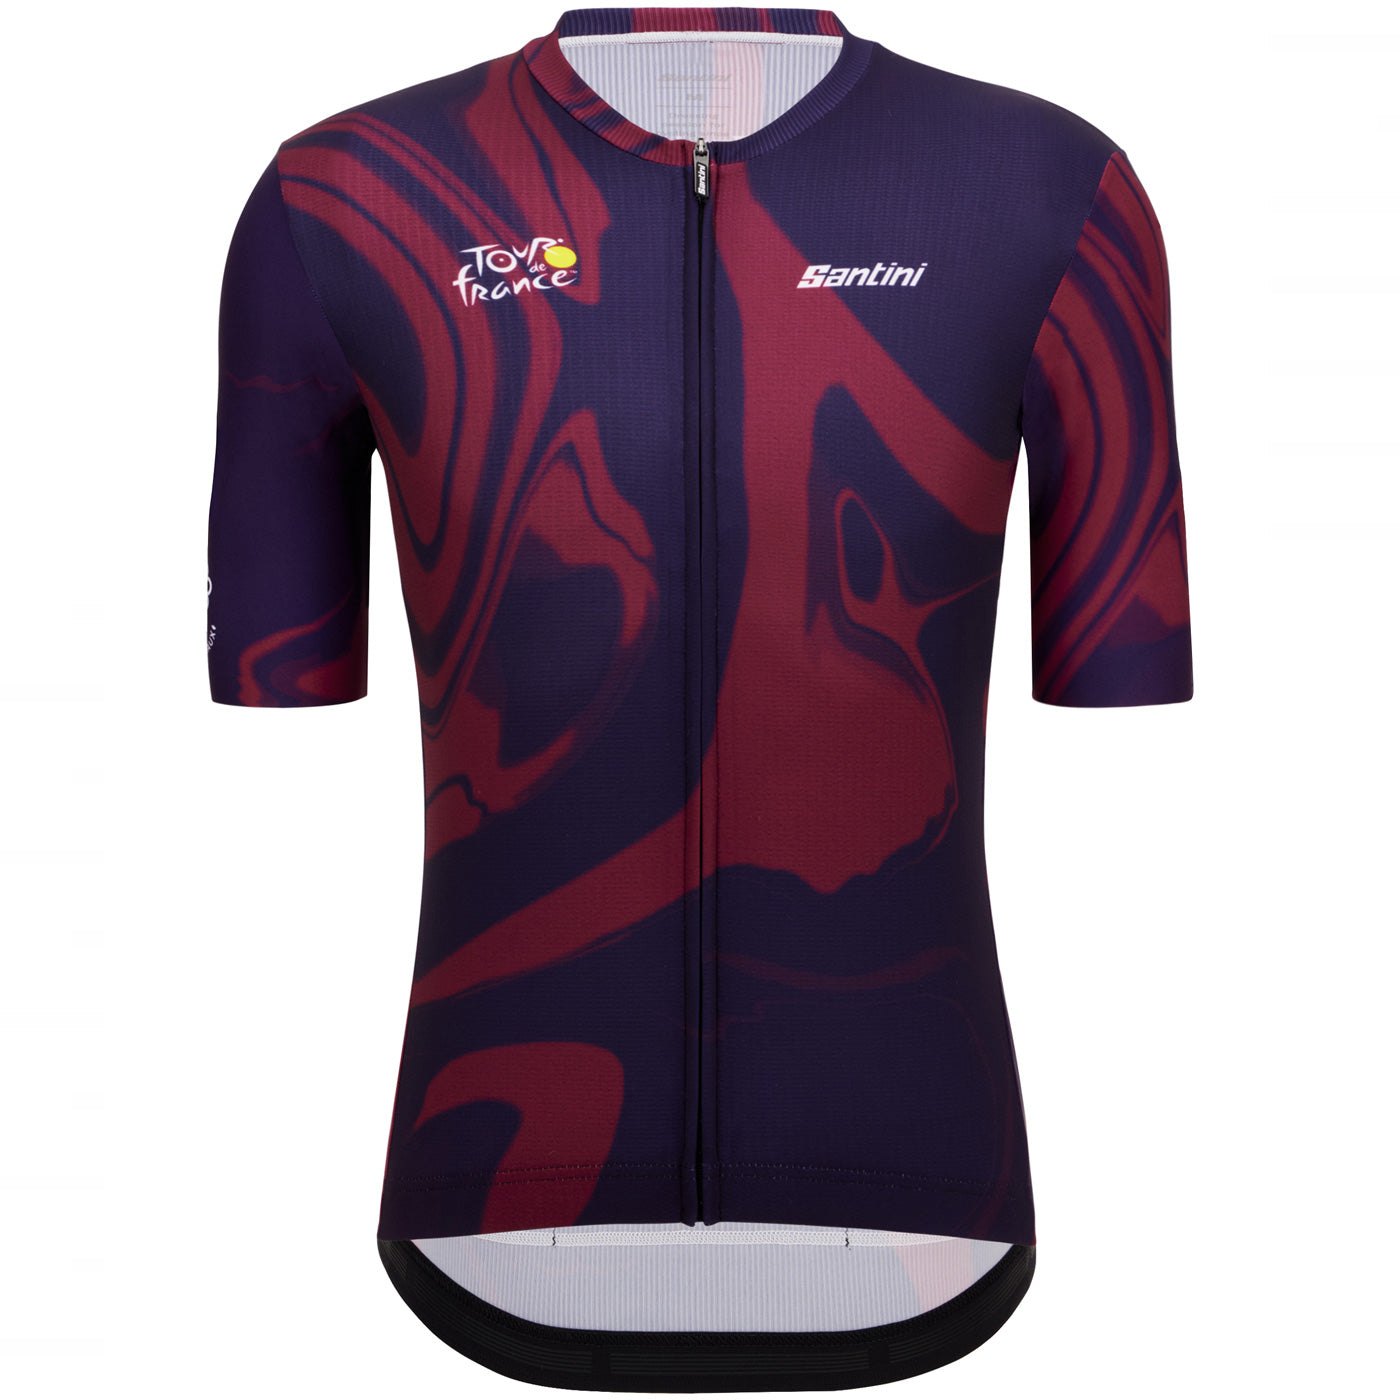 Tour de France jersey - Bordeaux